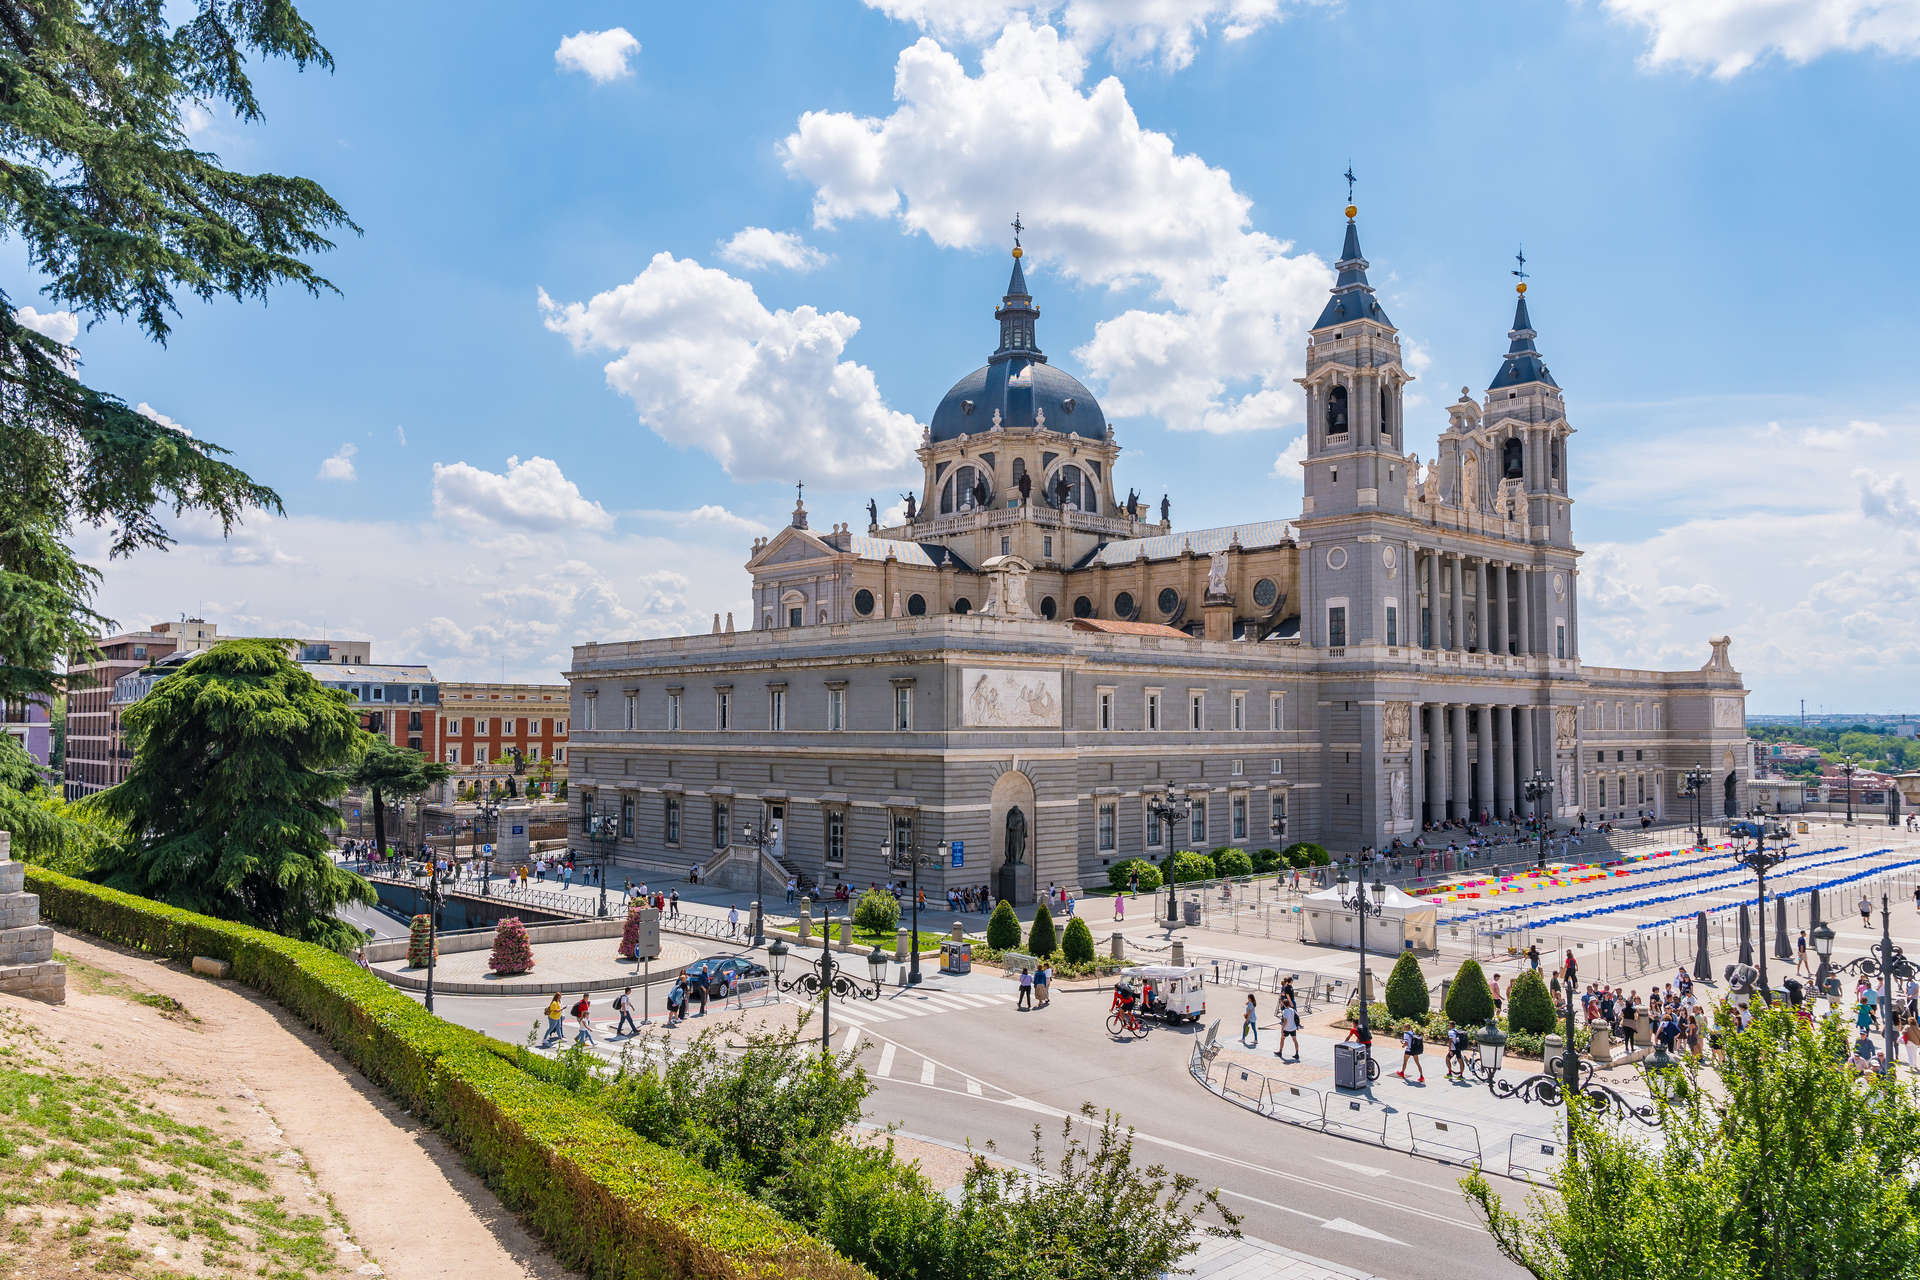 Cathedral of Santa Maria la Real de la Almudena in Madrid capital of Spain